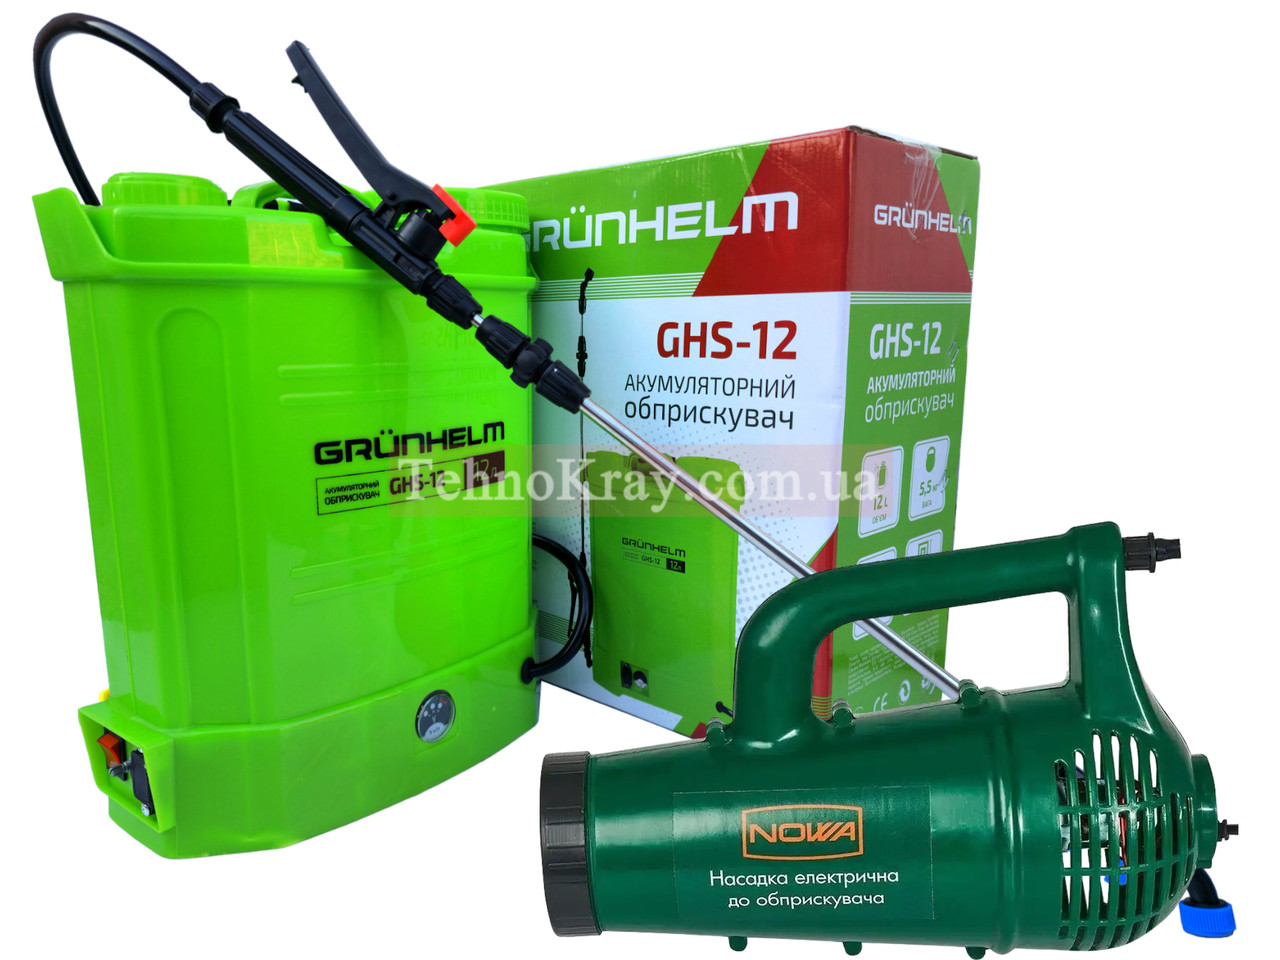 Садовий акумуляторний обприскувач Grunhelm GHS-12 з турбонасадкою Nowa DO 0612o в комплекті